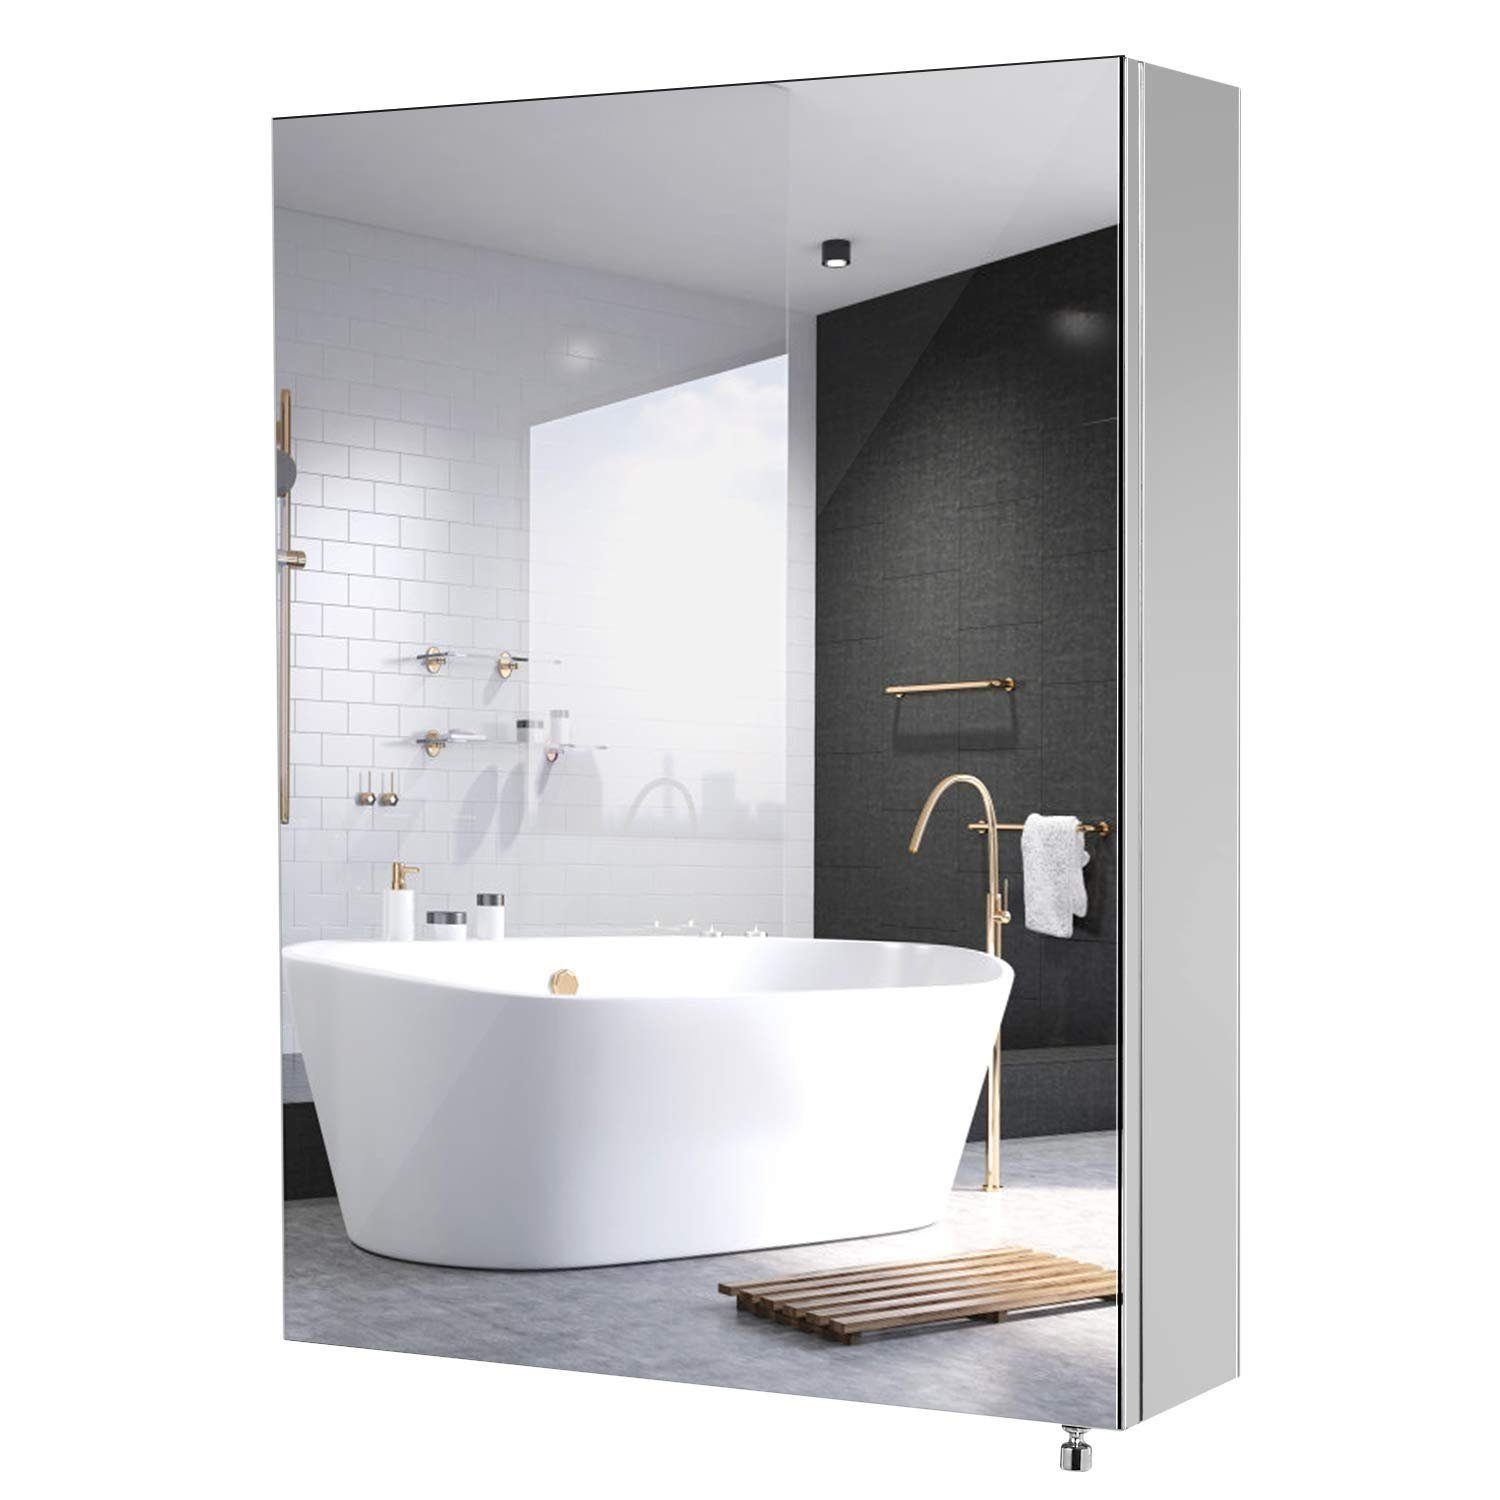 Homfa Spiegelschrank Edelstahl Badezimmerspiegelschrank weiß 45cm breit